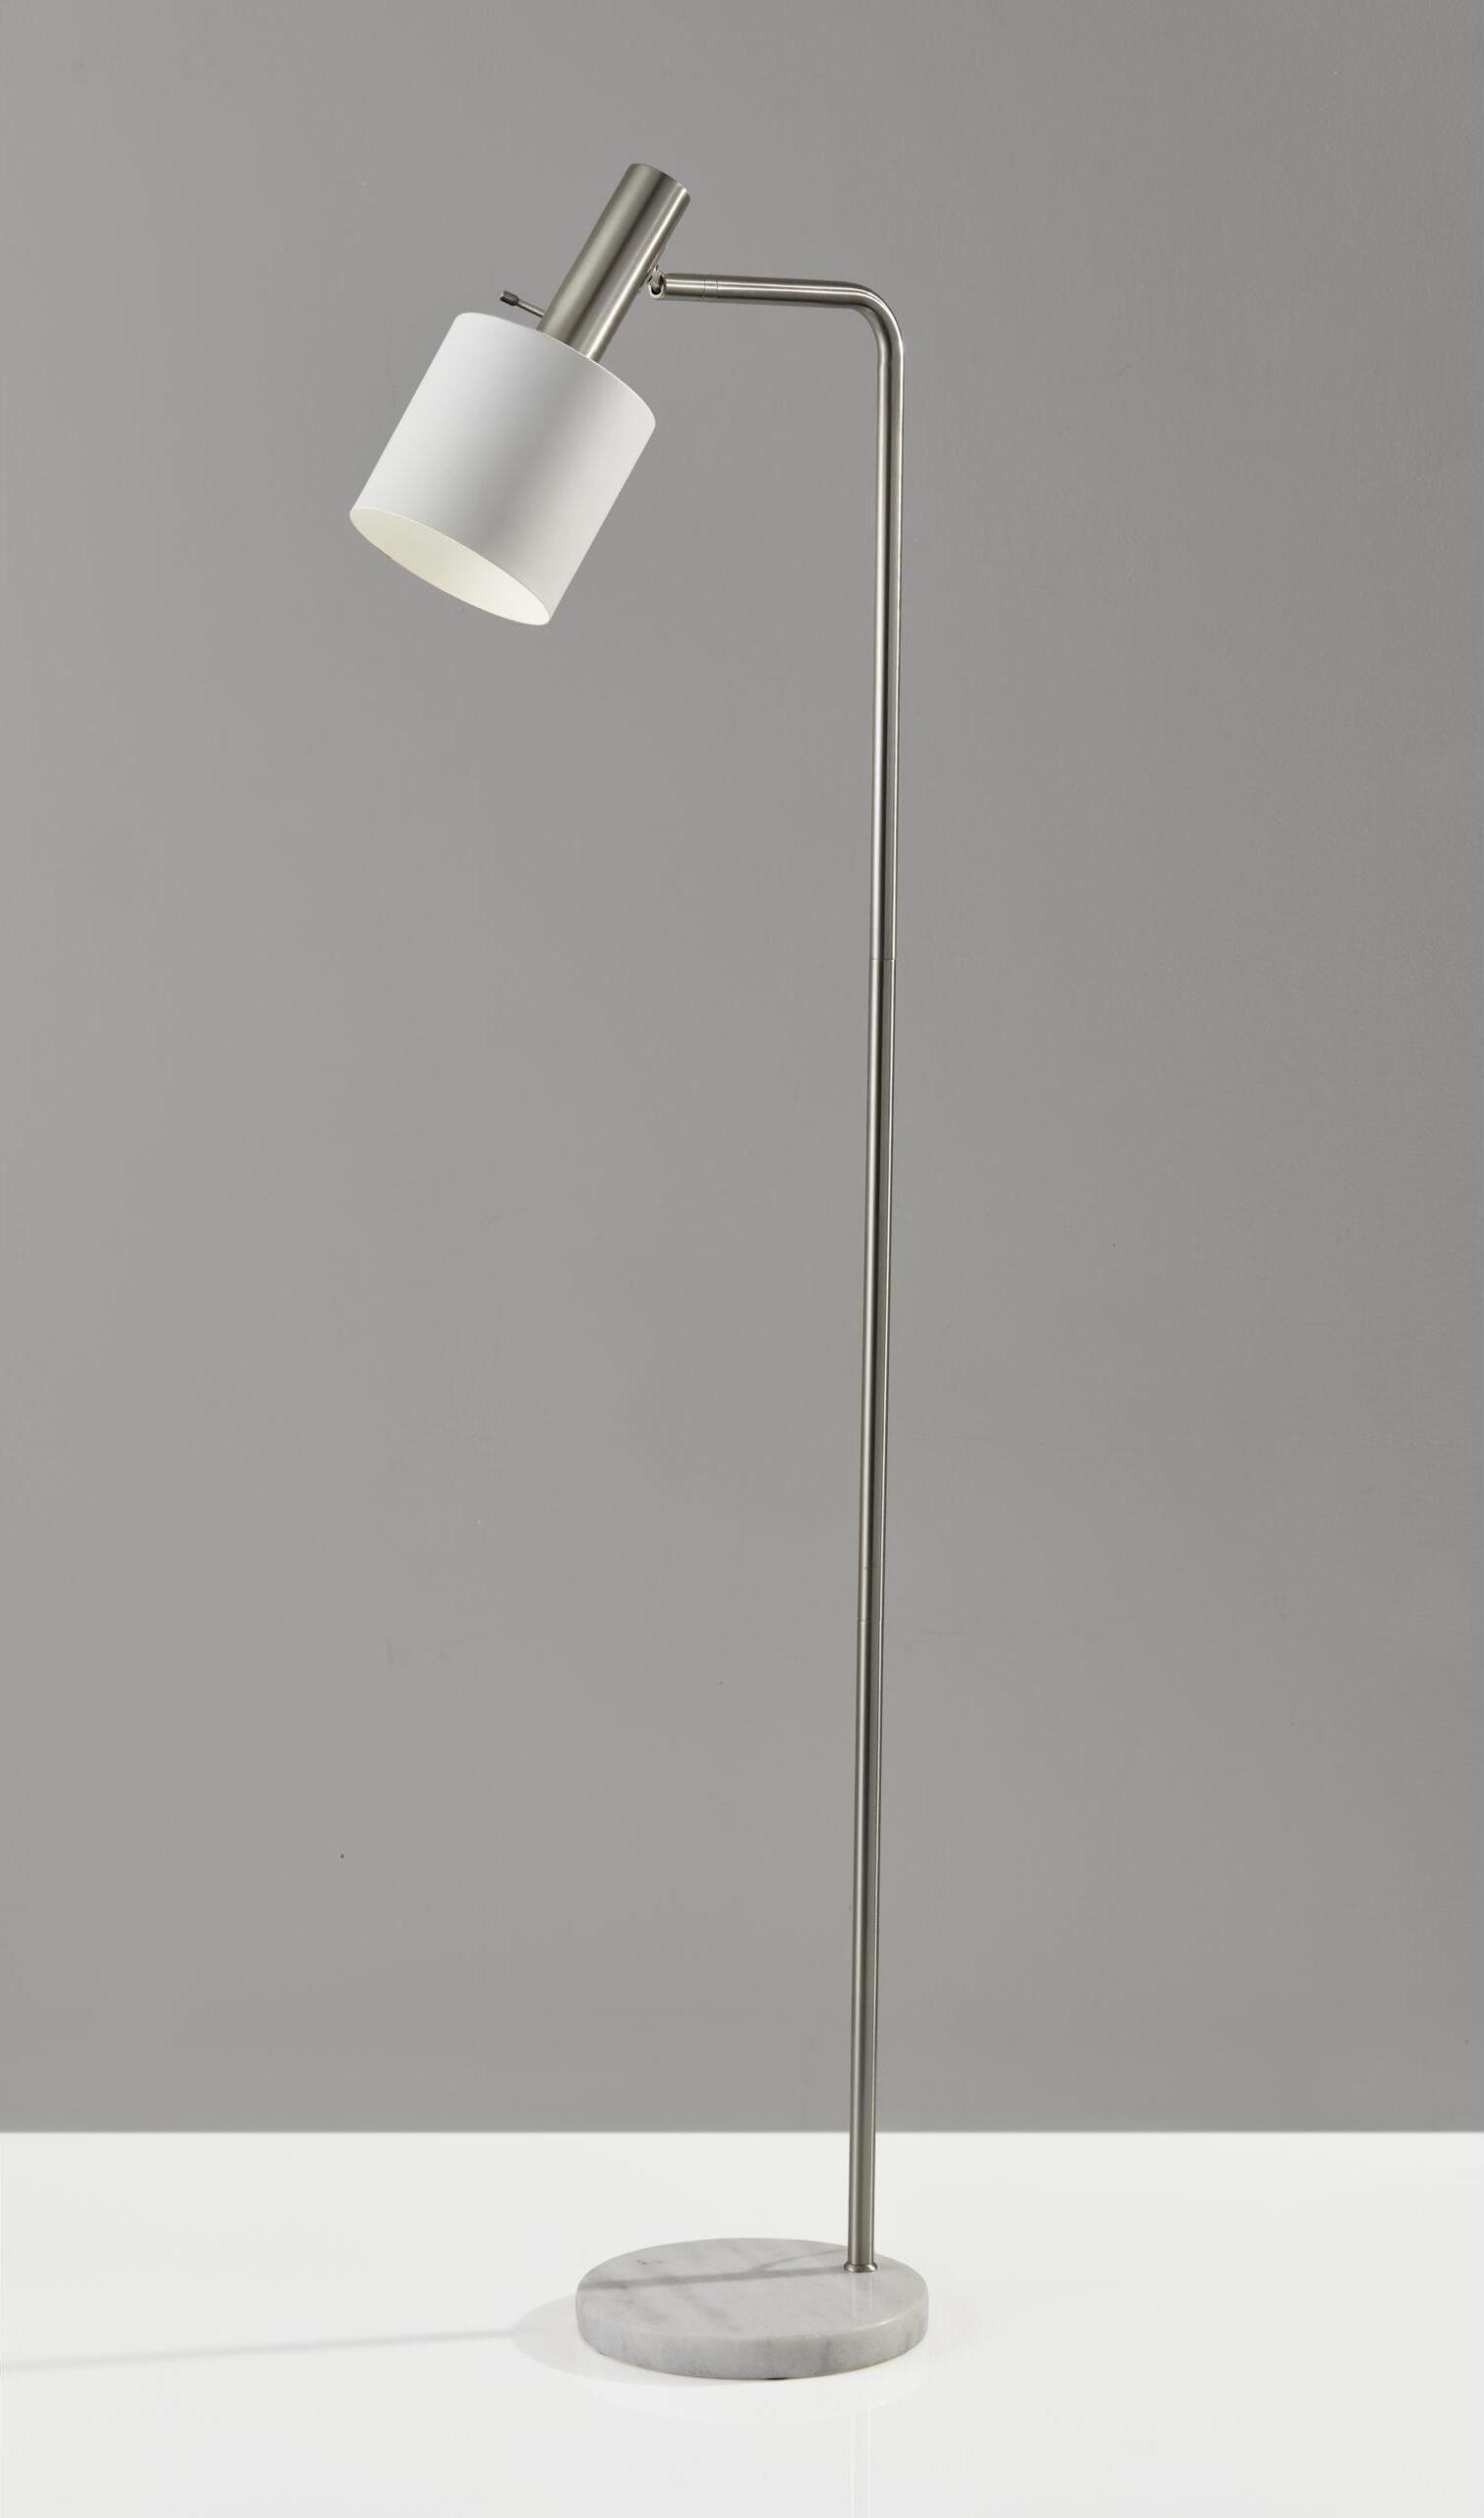 Adesso Floor Lamps - Emmett Floor Lamp Brushed Steel & White